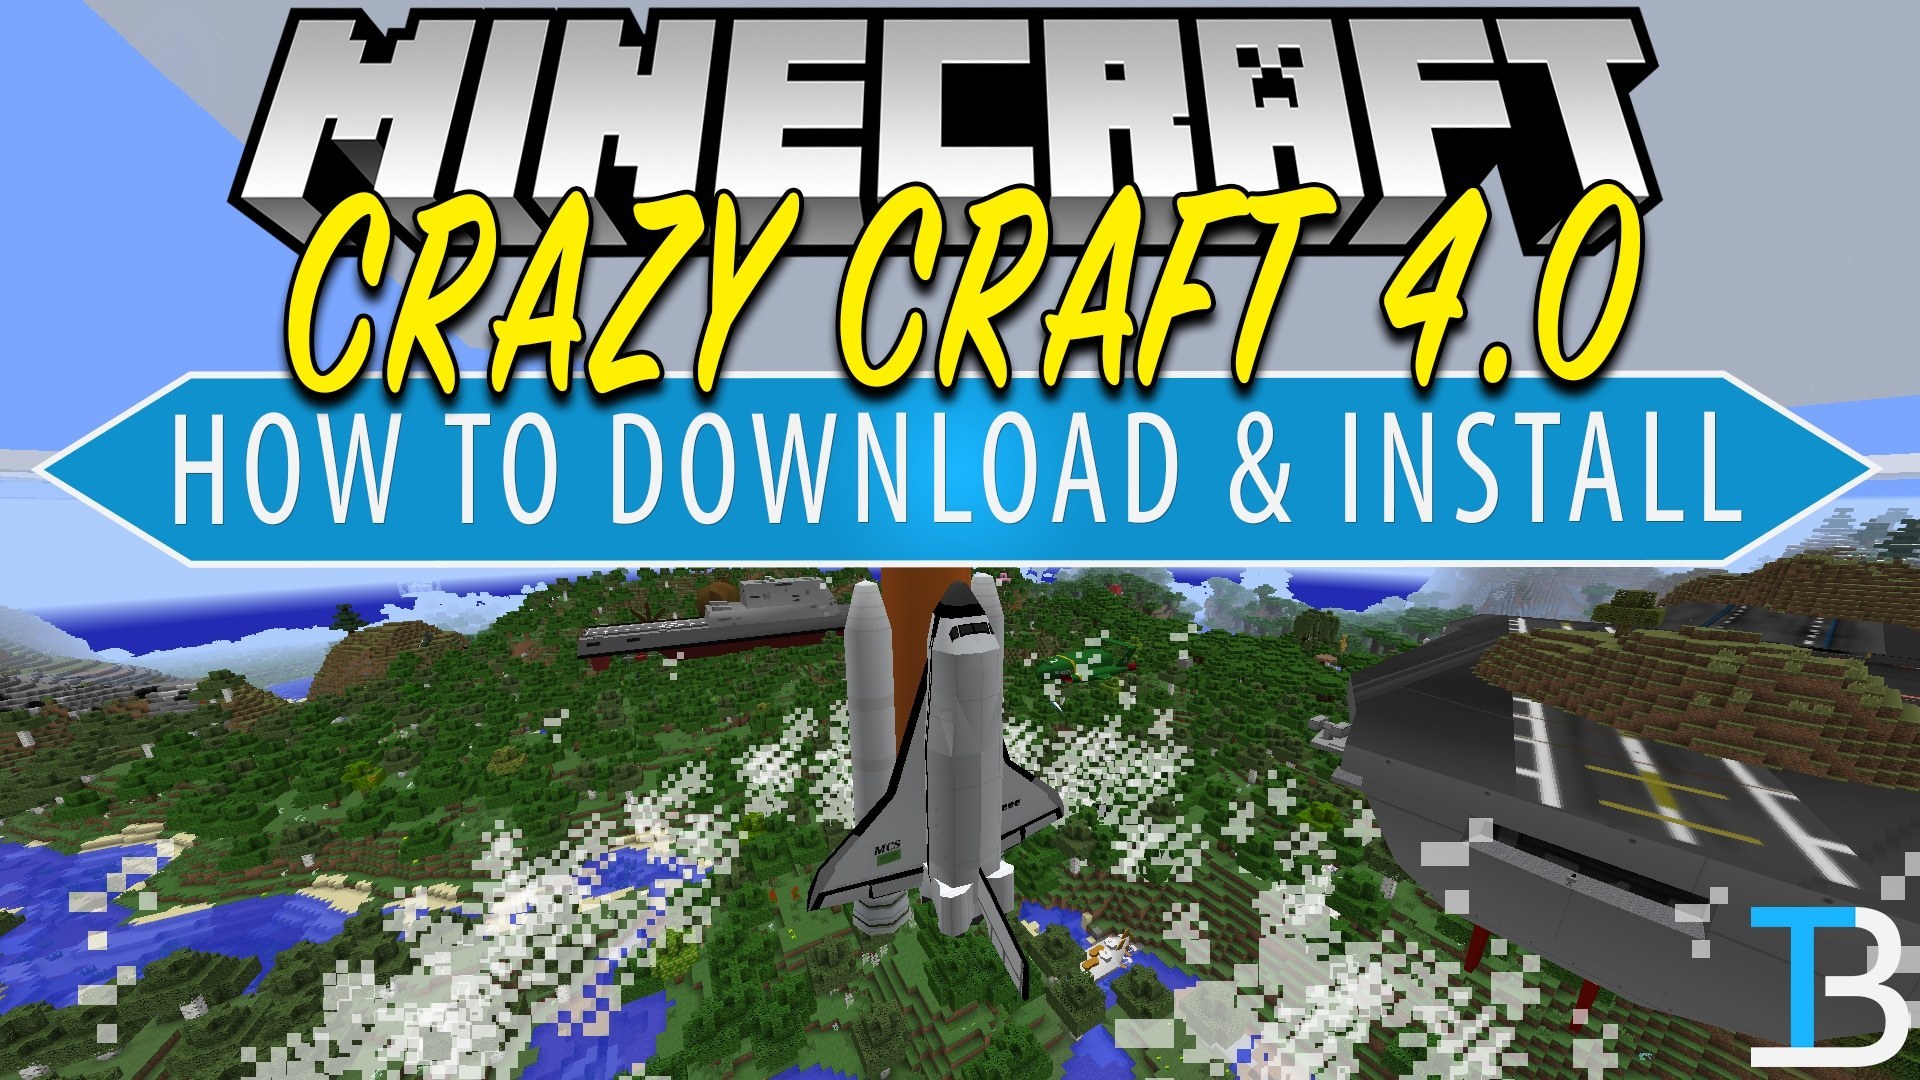 Minecraft crazy craft download mac installer